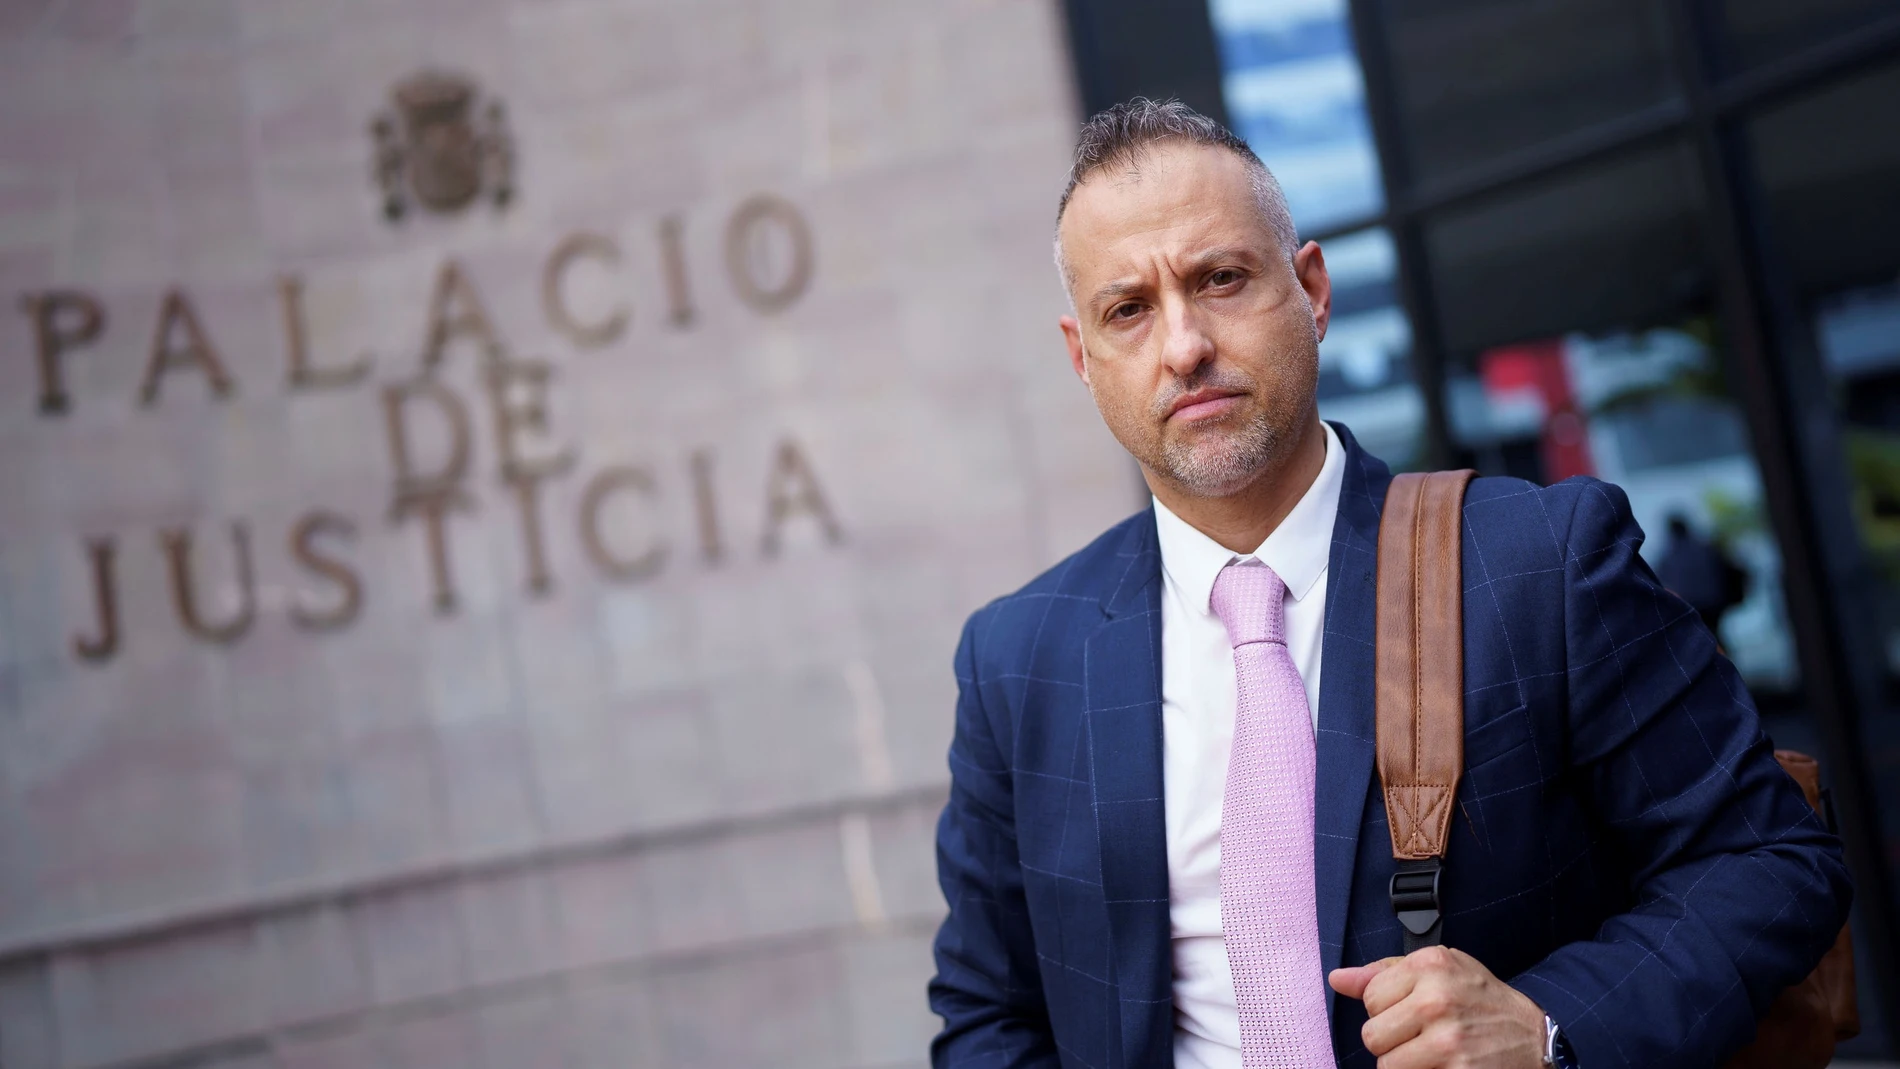 El letrado de la Asociación para la Lucha contra el Crimen y la Prevención, que ejerce de acusación particular, Diego Costa